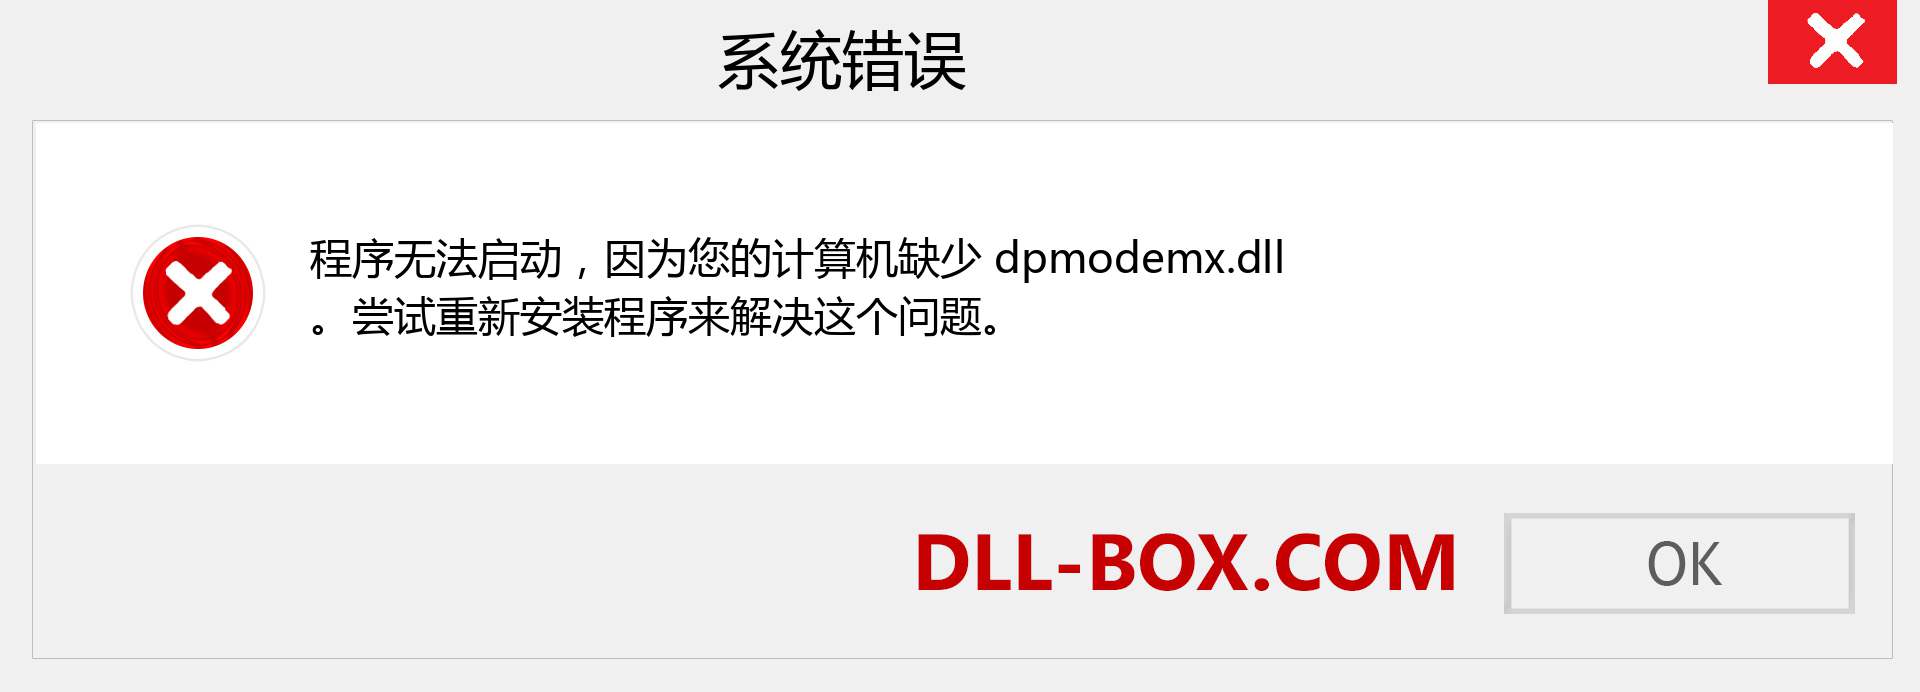 dpmodemx.dll 文件丢失？。 适用于 Windows 7、8、10 的下载 - 修复 Windows、照片、图像上的 dpmodemx dll 丢失错误